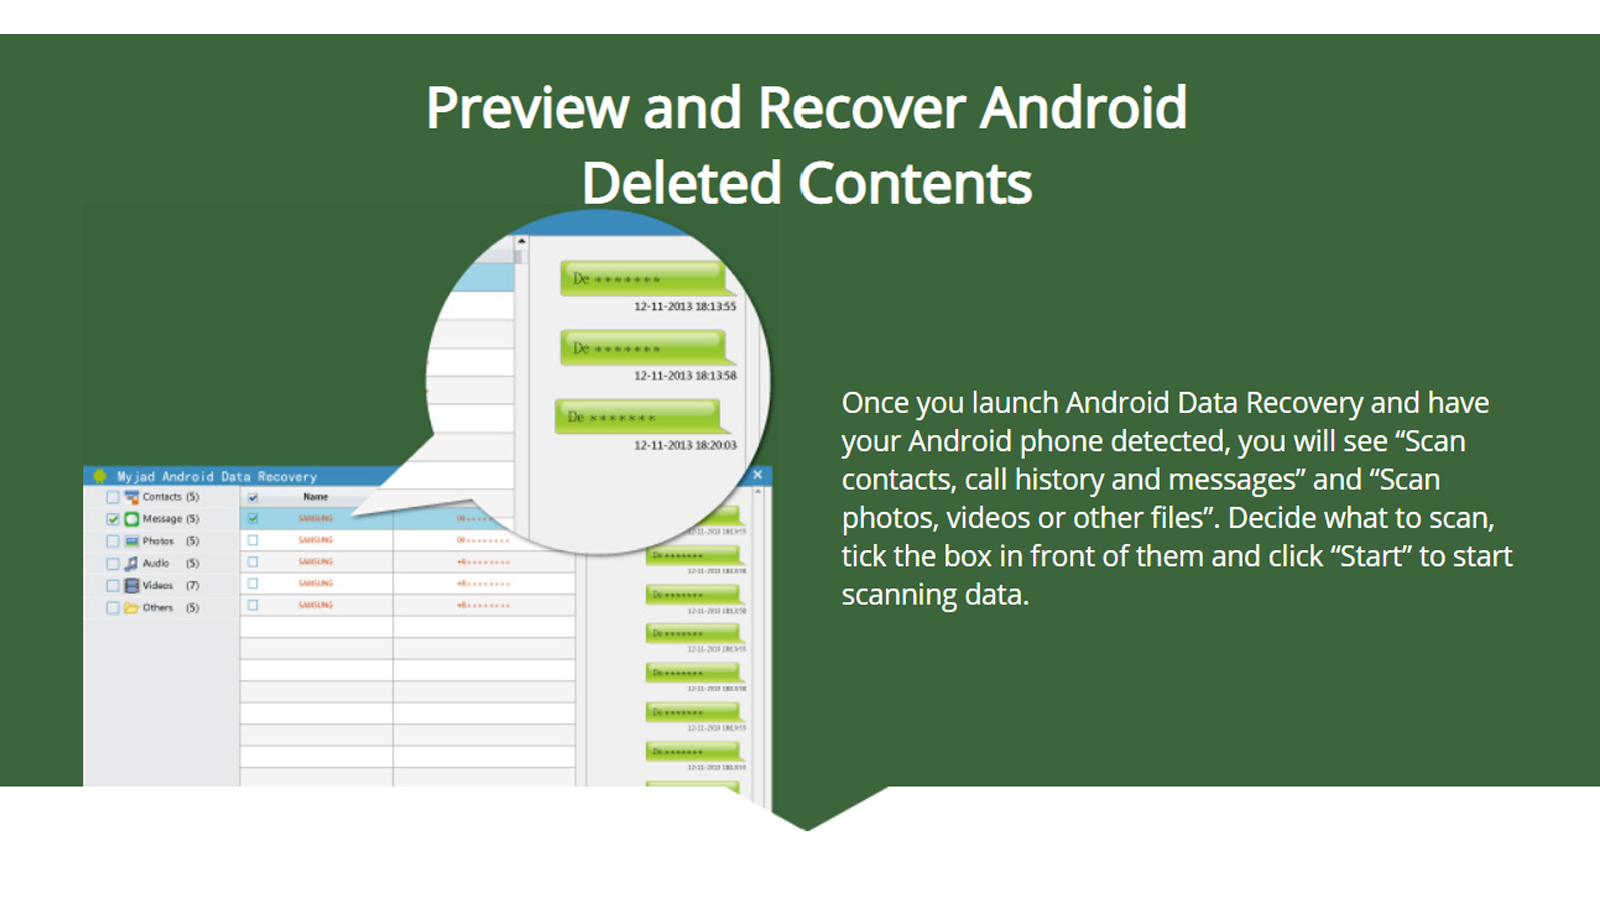 Ứng dụng MyJad Android Data Recovery có thể khôi phục dữ liệu và lưu bản sao vào máy tính để bàn của bạn